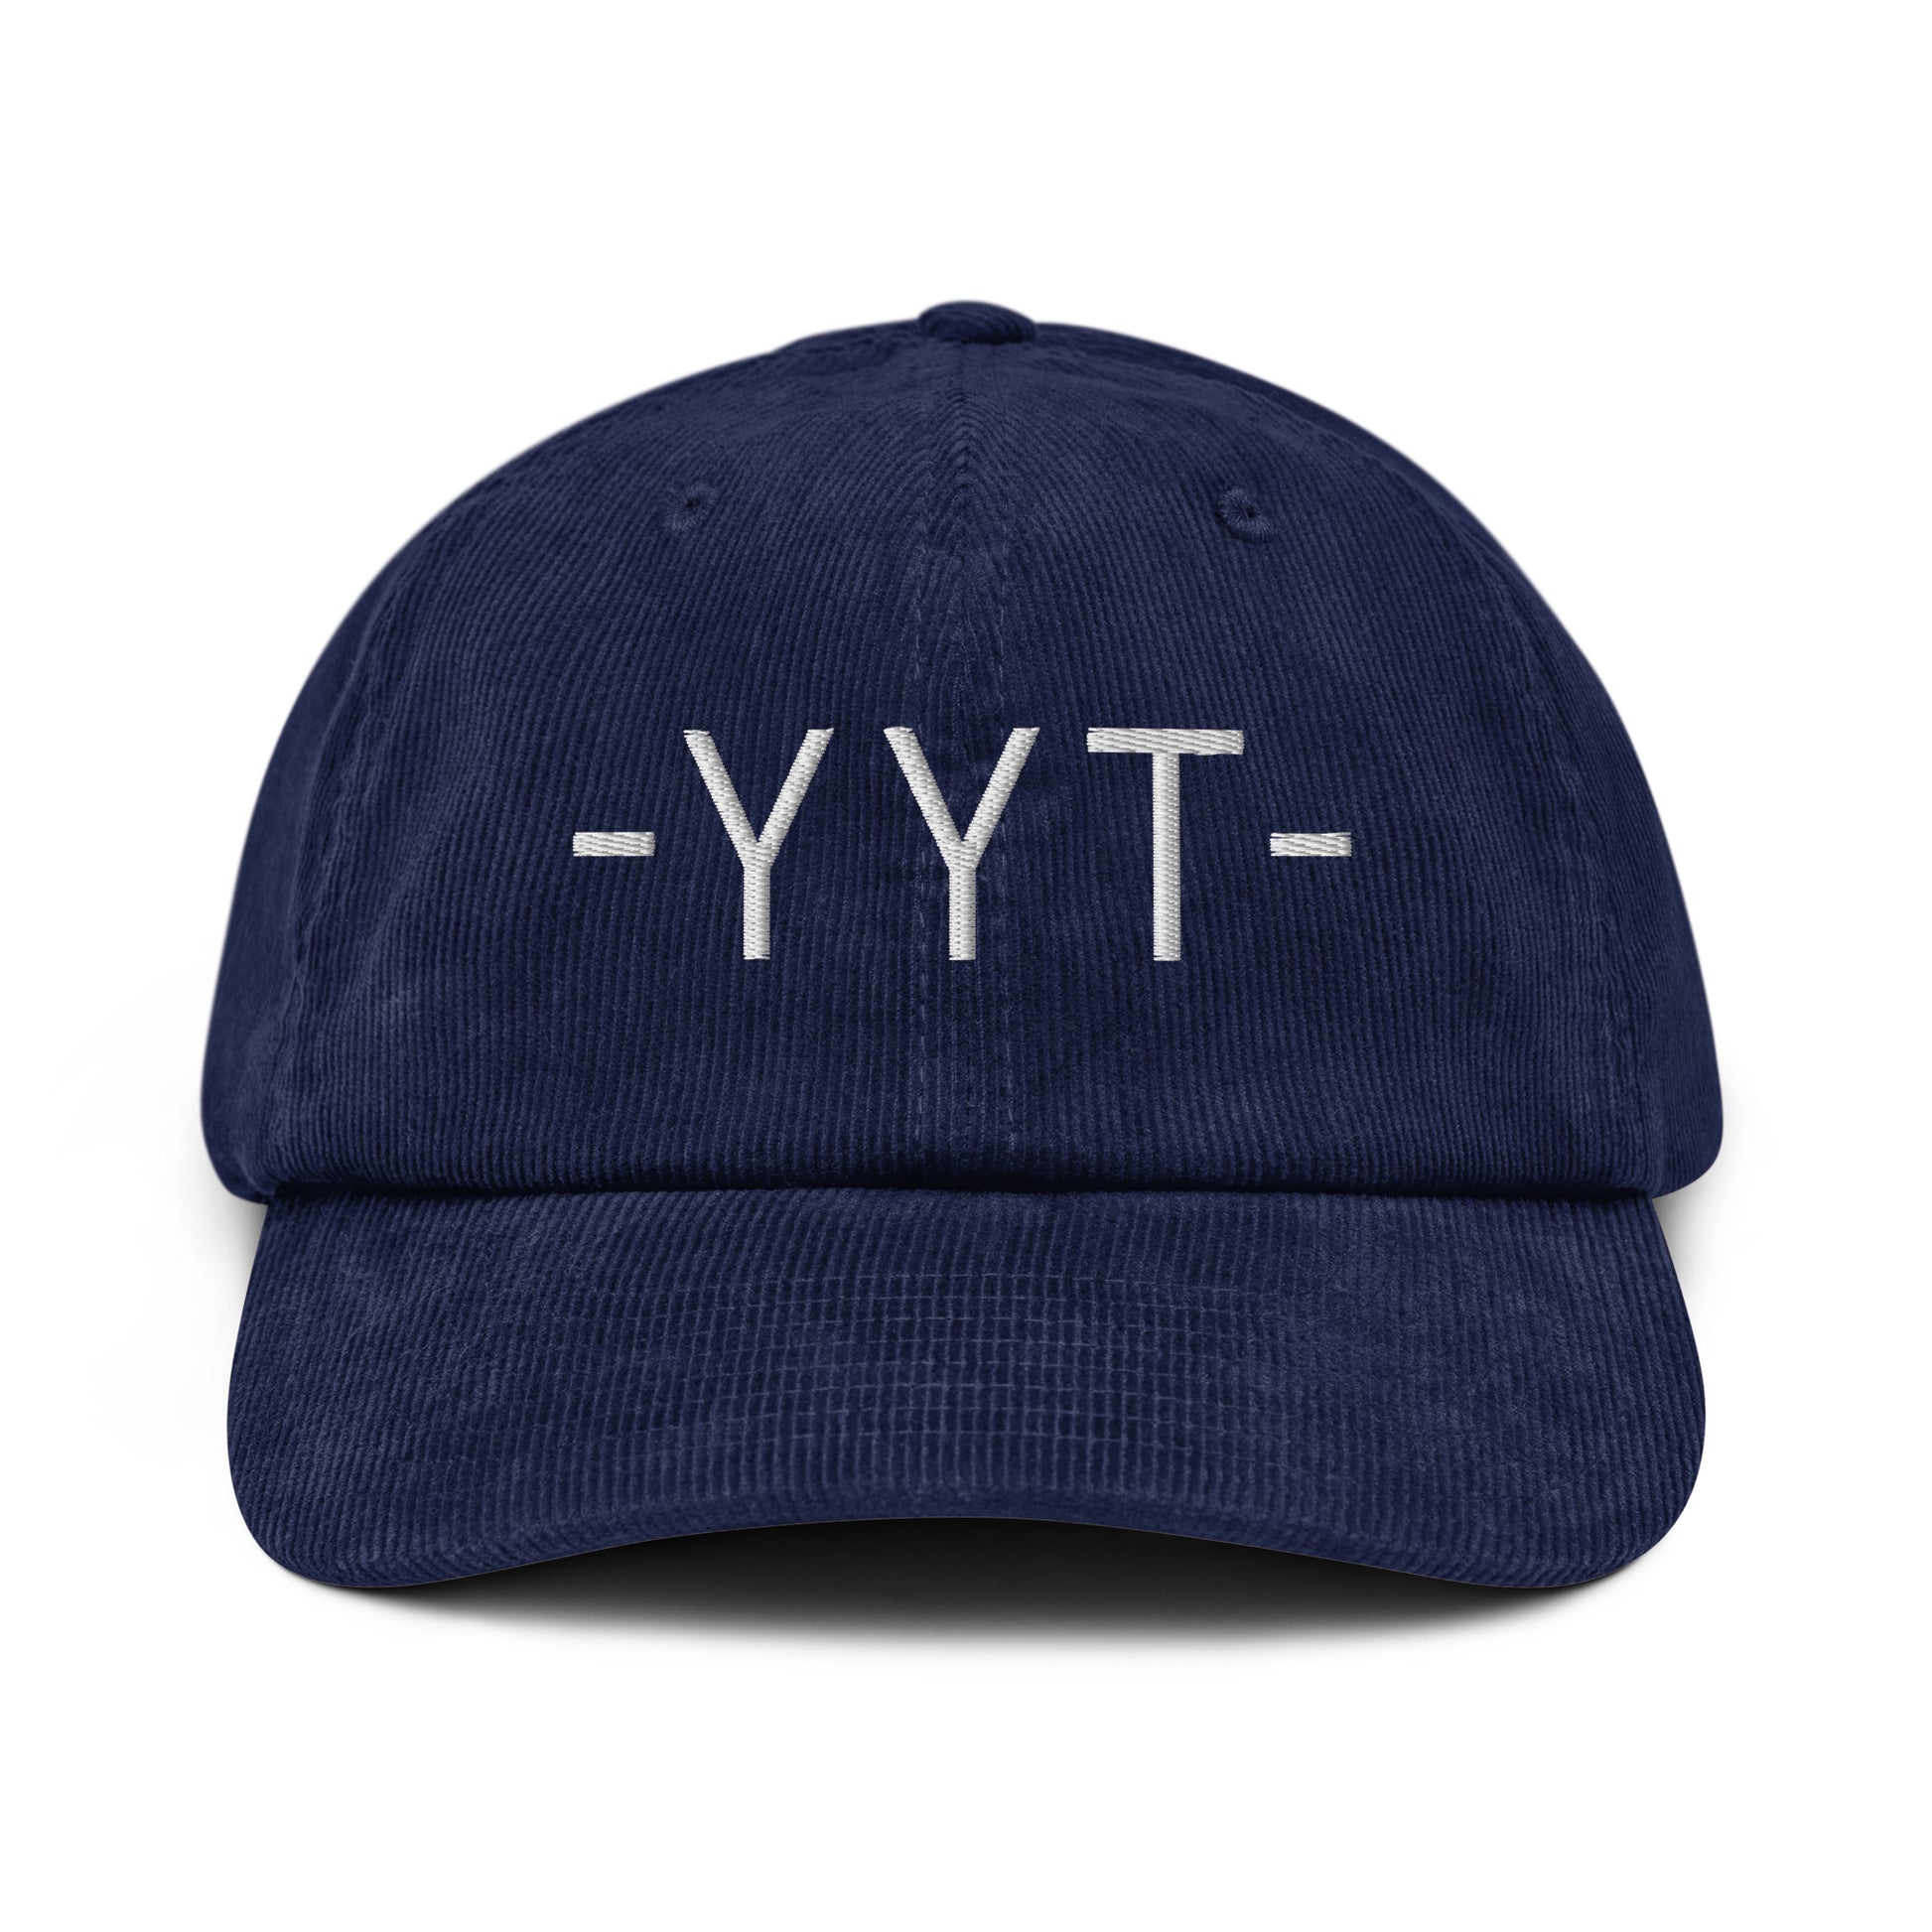 Souvenir Corduroy Hat - White • YYT St. John's • YHM Designs - Image 15